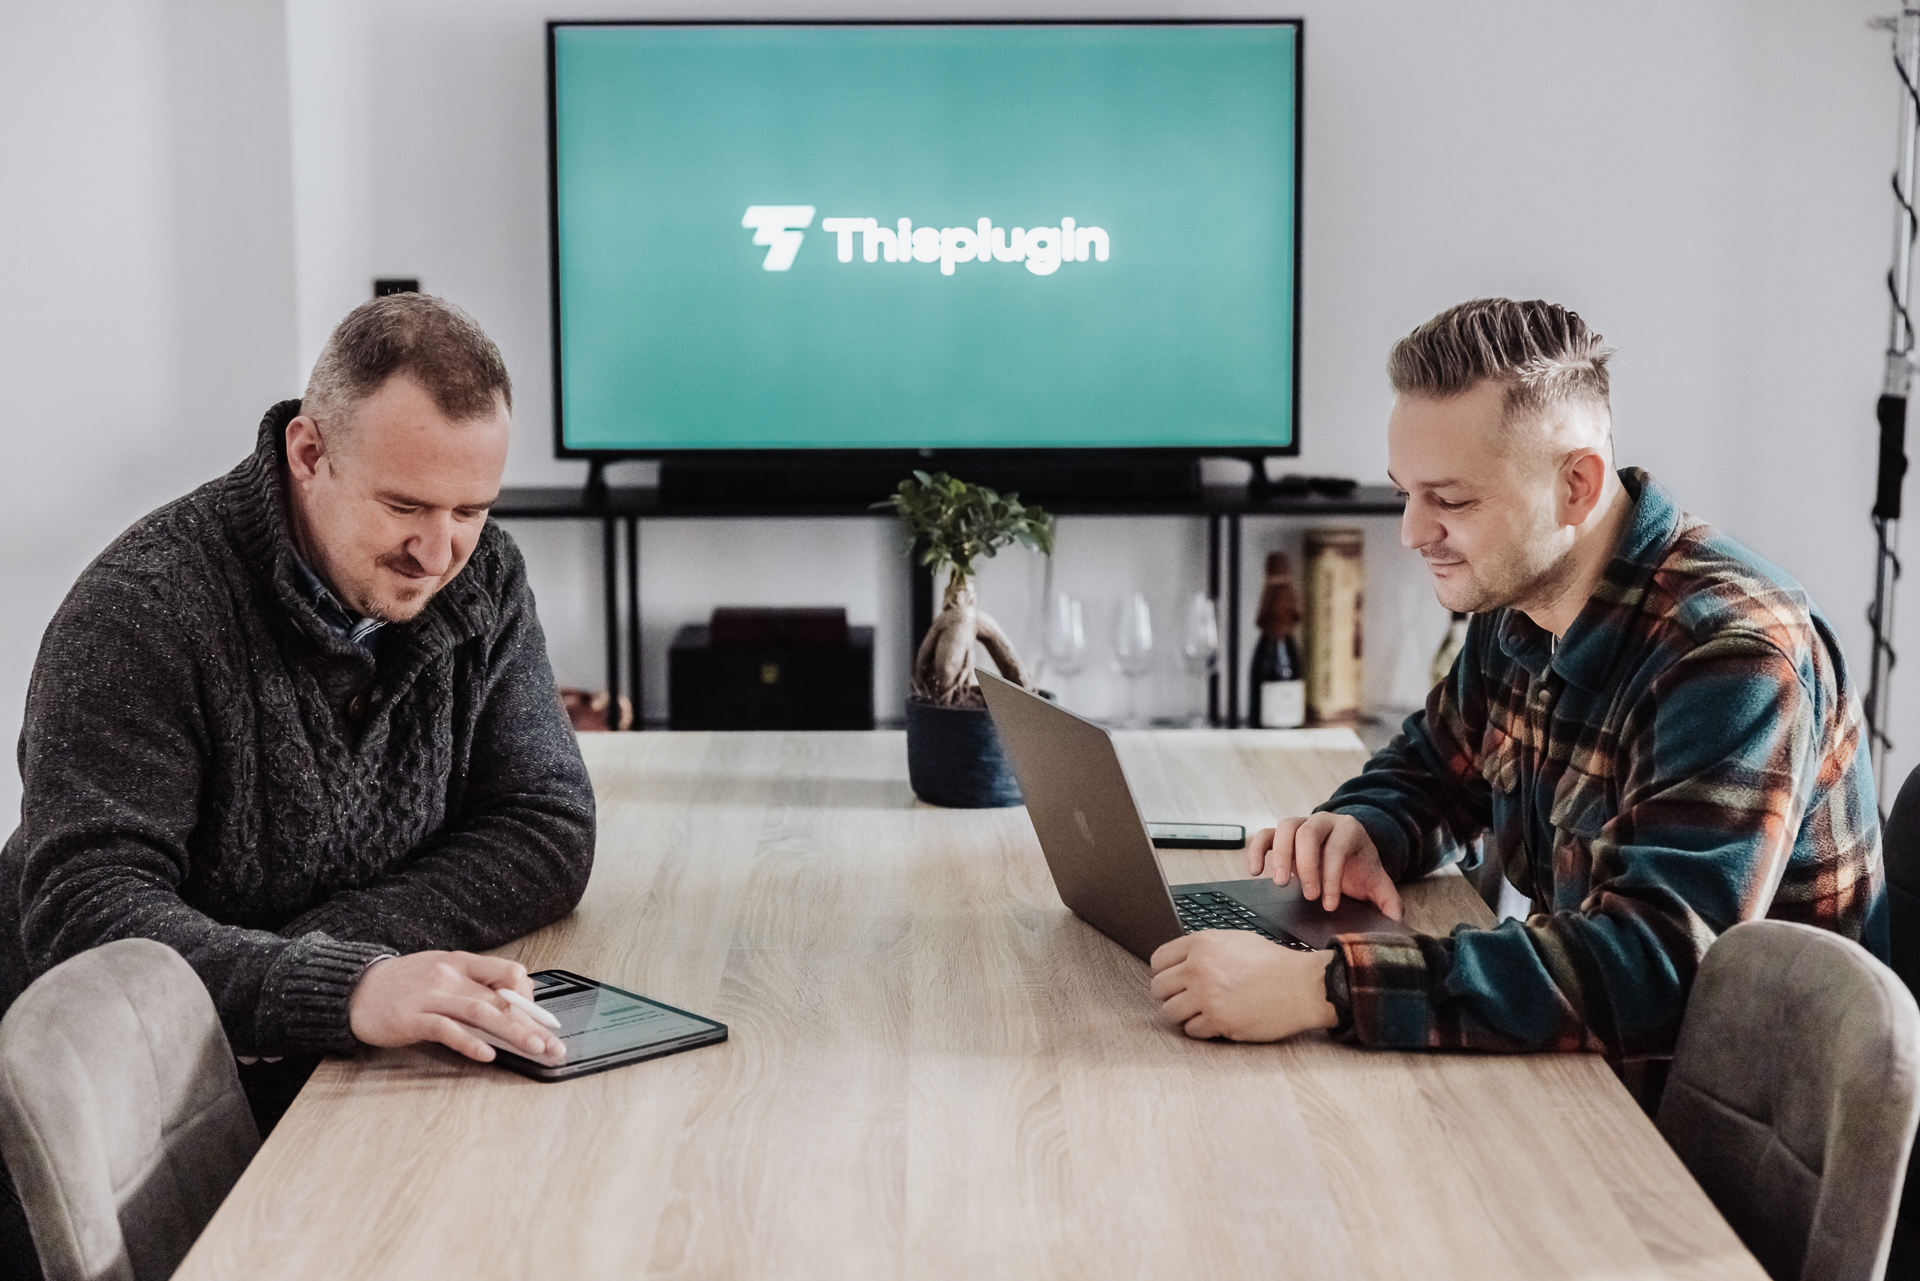 2 mladí muži pracují na mobilních zařízeních u stolu v zasedačce, v pozadí TV s logem Thisplugin